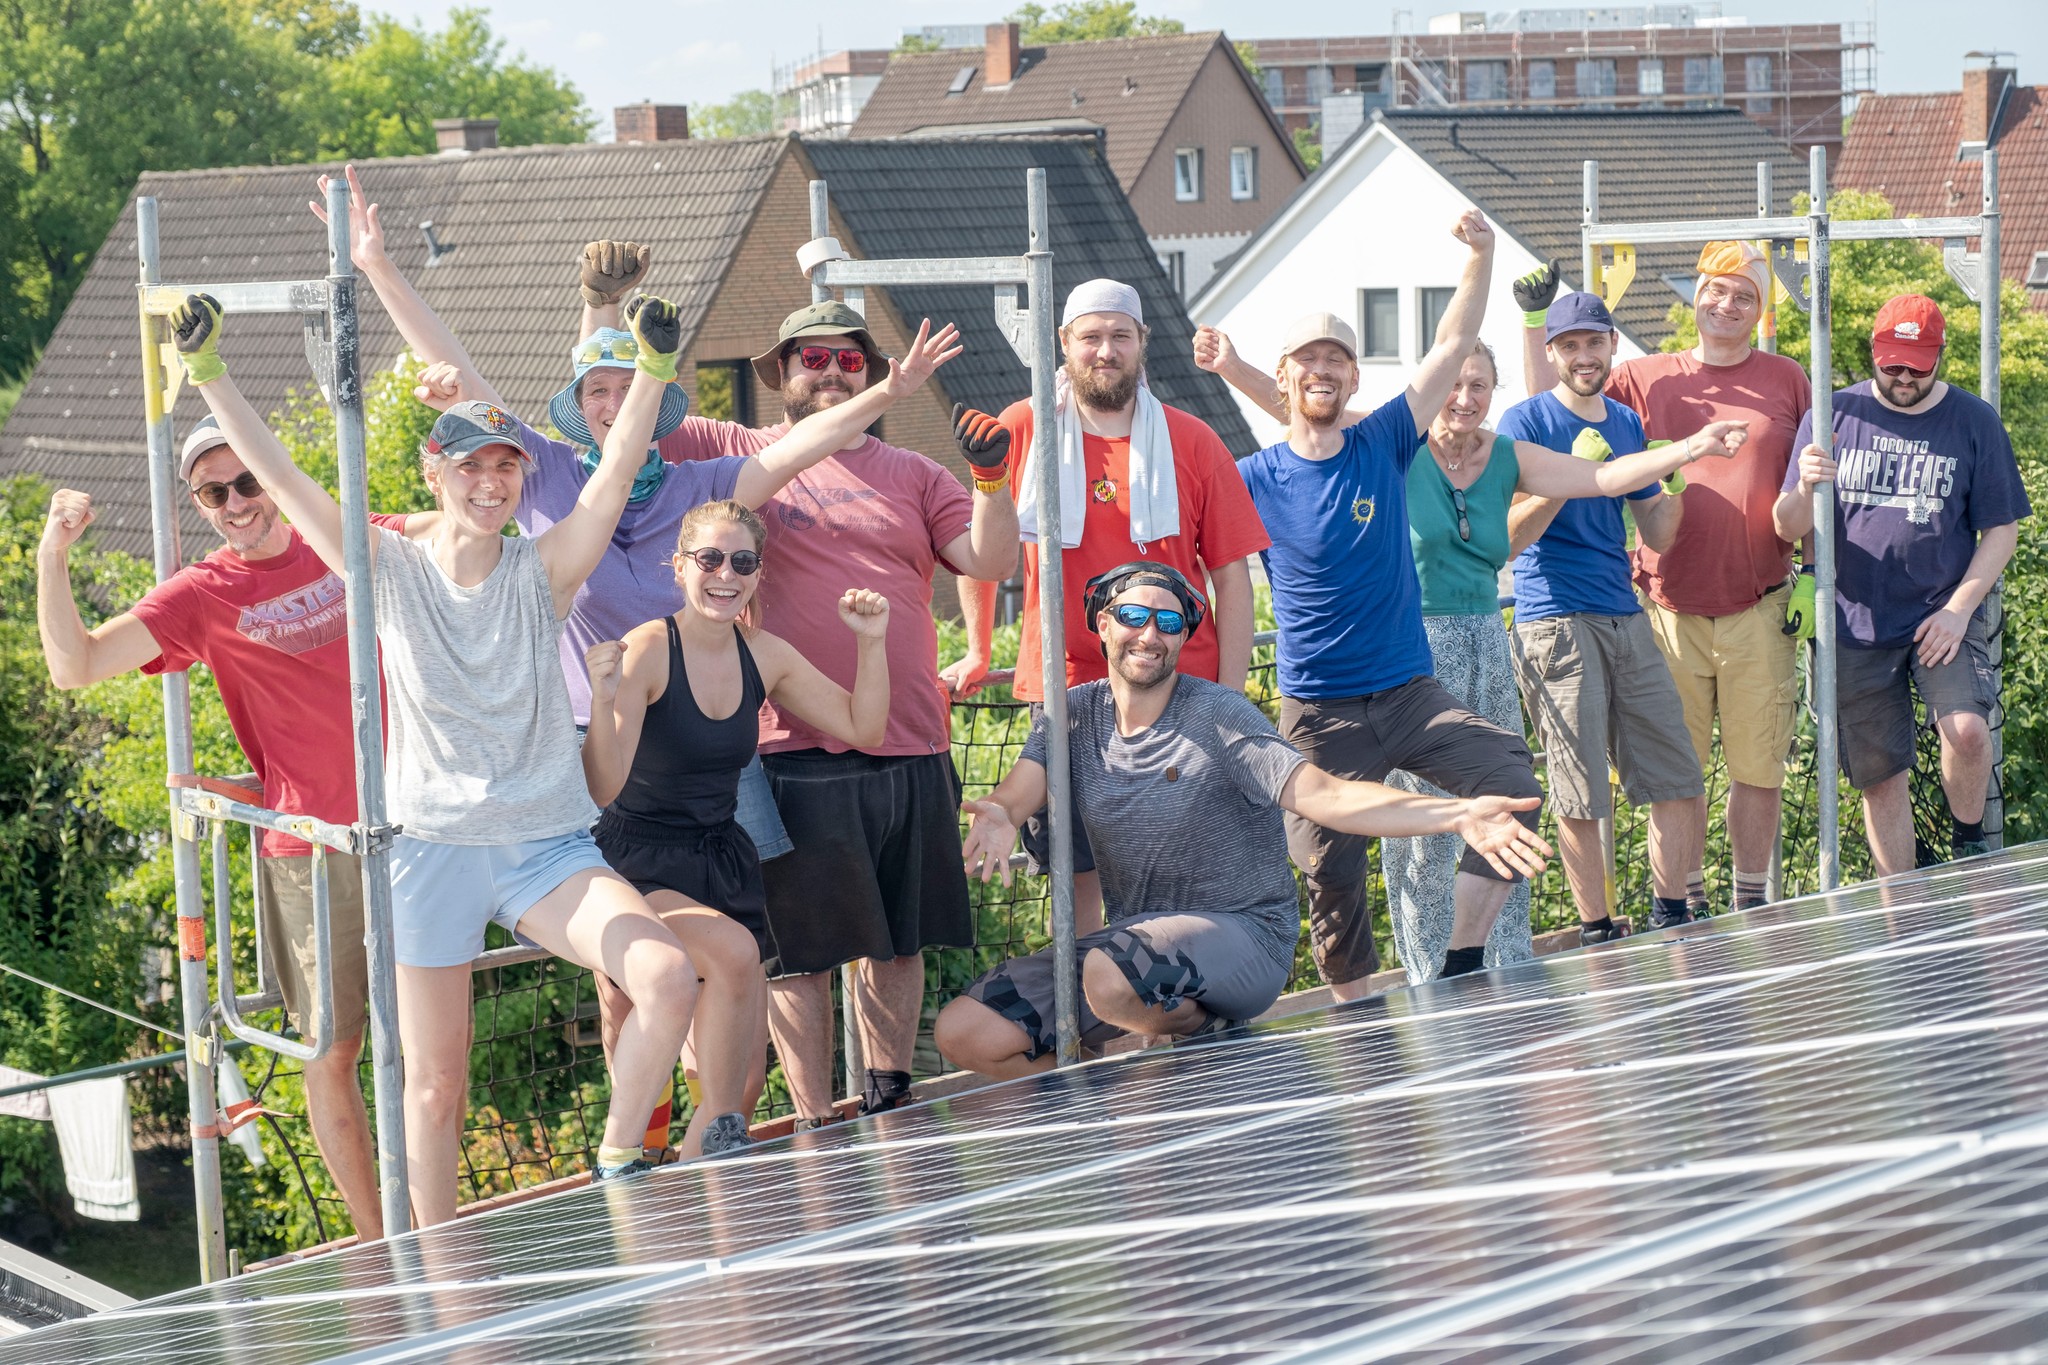 Vor dem Steildach mit einer fertig installierten Solar-Anlage stehen zehn Bauhelfer:innen und das Team vom Bremer SolidarStrom und freuen sich mit ausgestreckten Armen. Der Selbstbau-Tag war ein voller Erfolg!